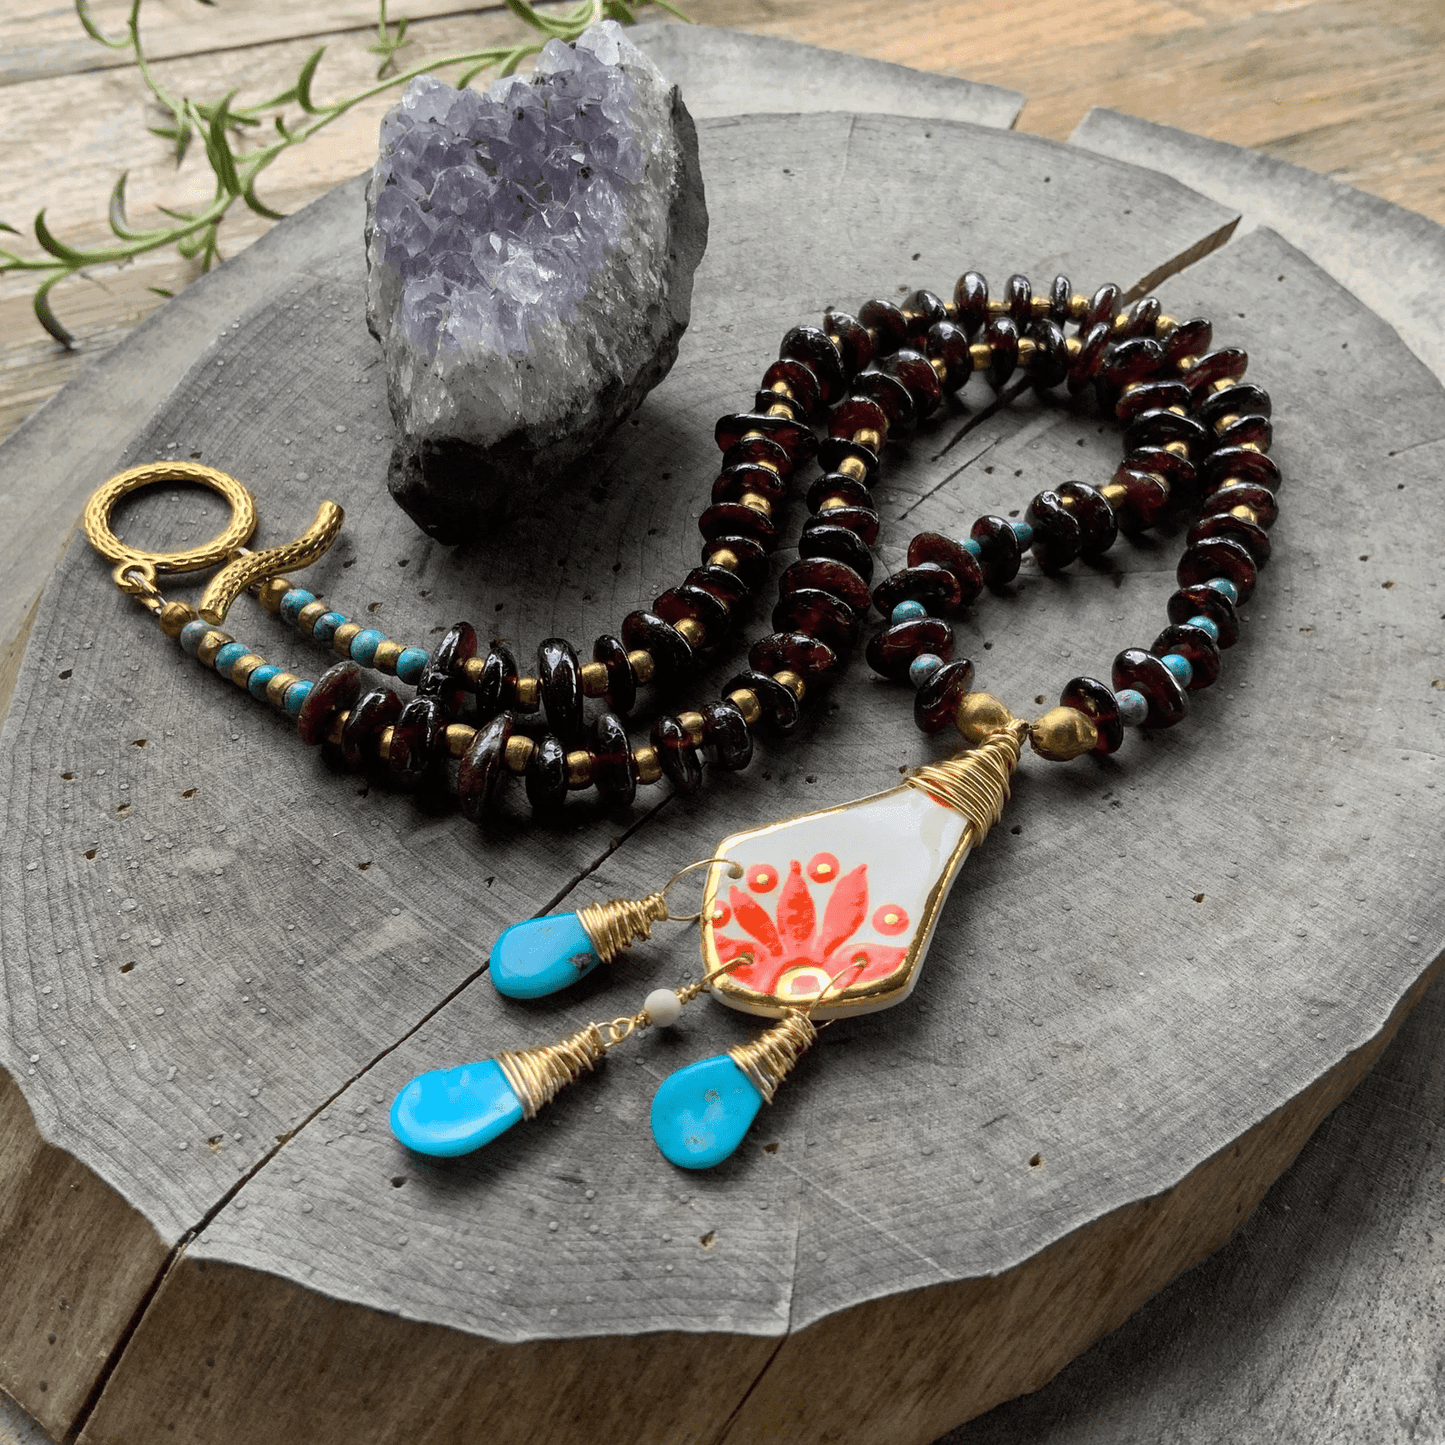 Floral Folk ceramic pendant and Garnet necklace